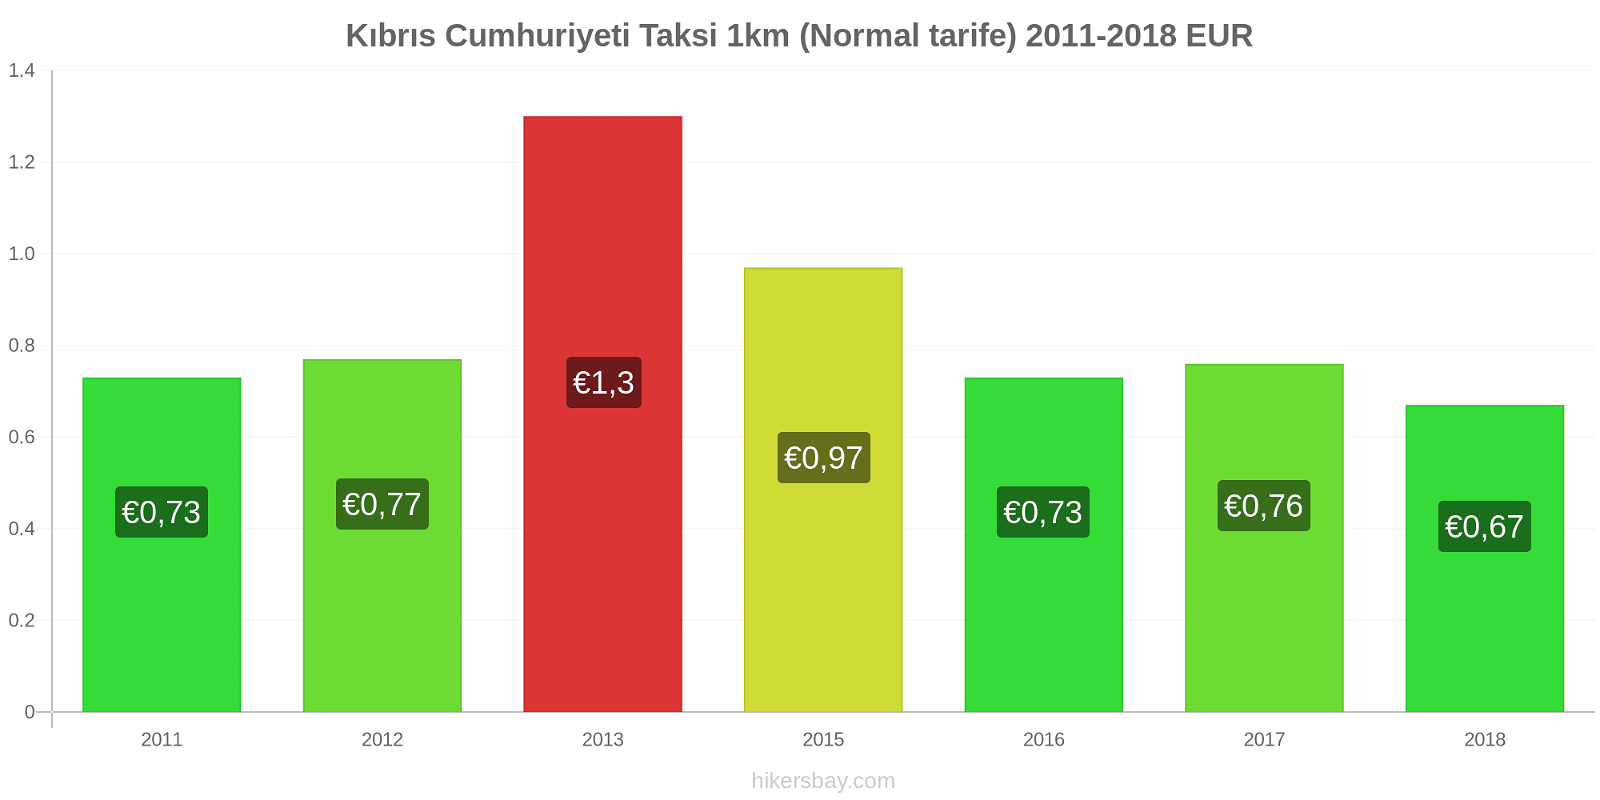 Kıbrıs Cumhuriyeti fiyat değişiklikleri Taksi 1km (Normal tarife) hikersbay.com